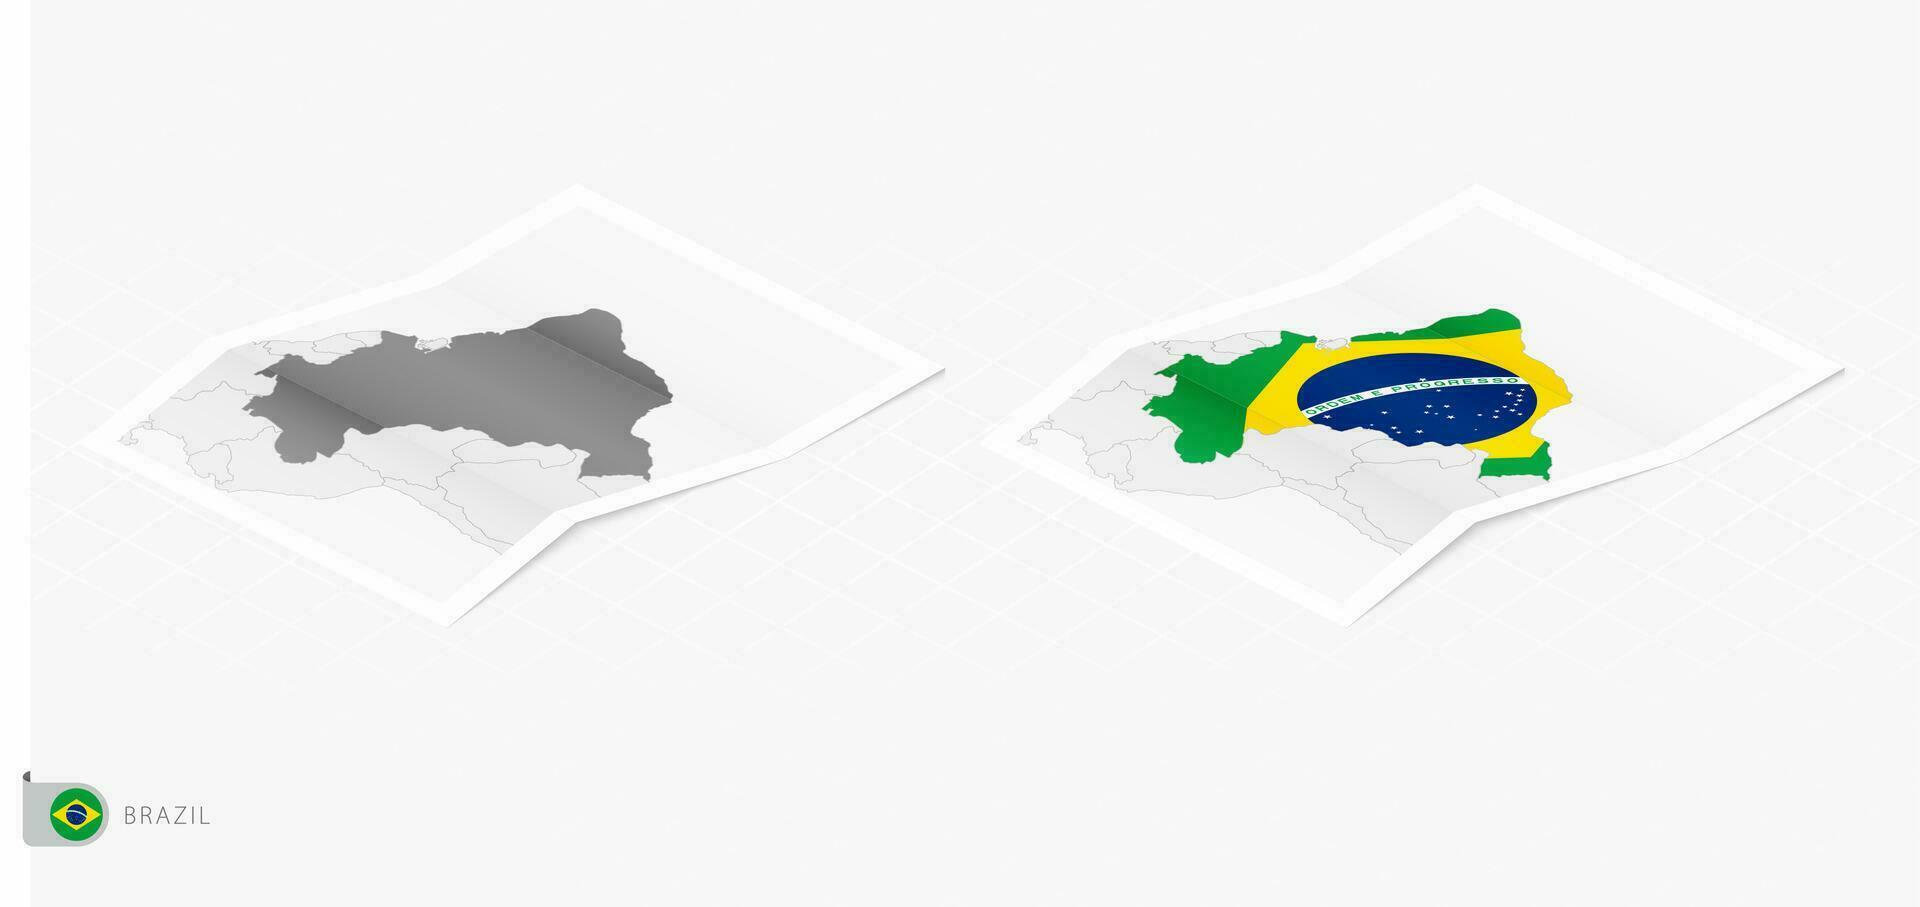 impostato di Due realistico carta geografica di brasile con ombra. il bandiera e carta geografica di brasile nel isometrico stile. vettore